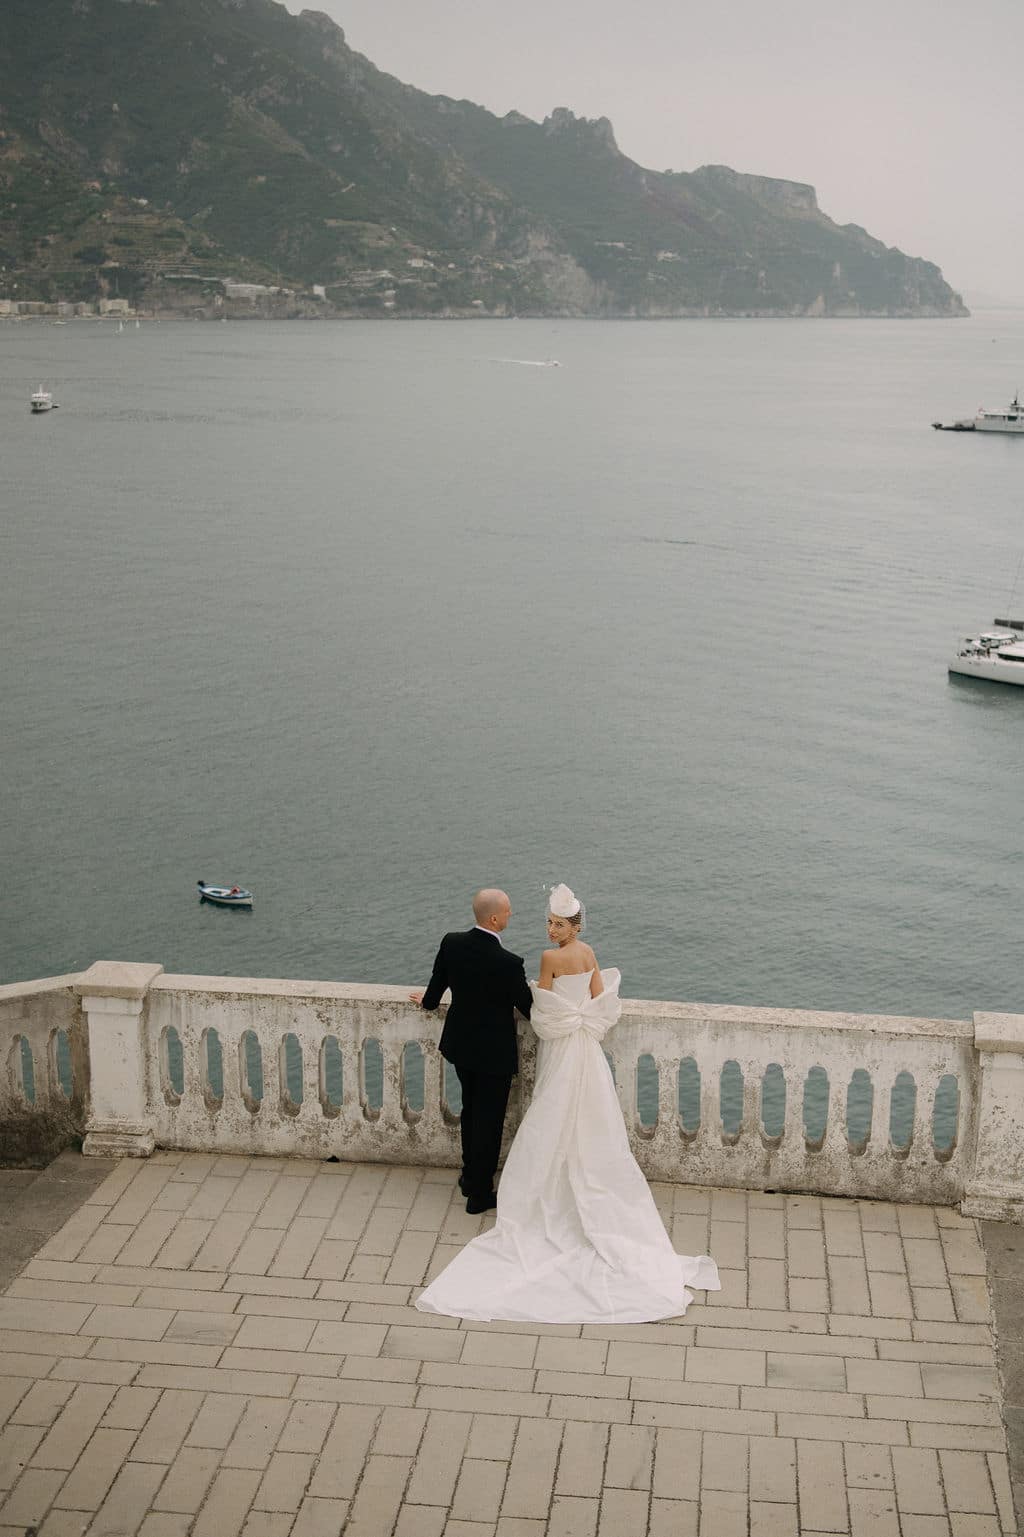 Vilma Wedding & Event Planner _ Vilma Rapšaitė _ vestuvių planavimas organizavimas koordinavimas Italijoje _ Atrani _ Amalfio pakrantė (4)